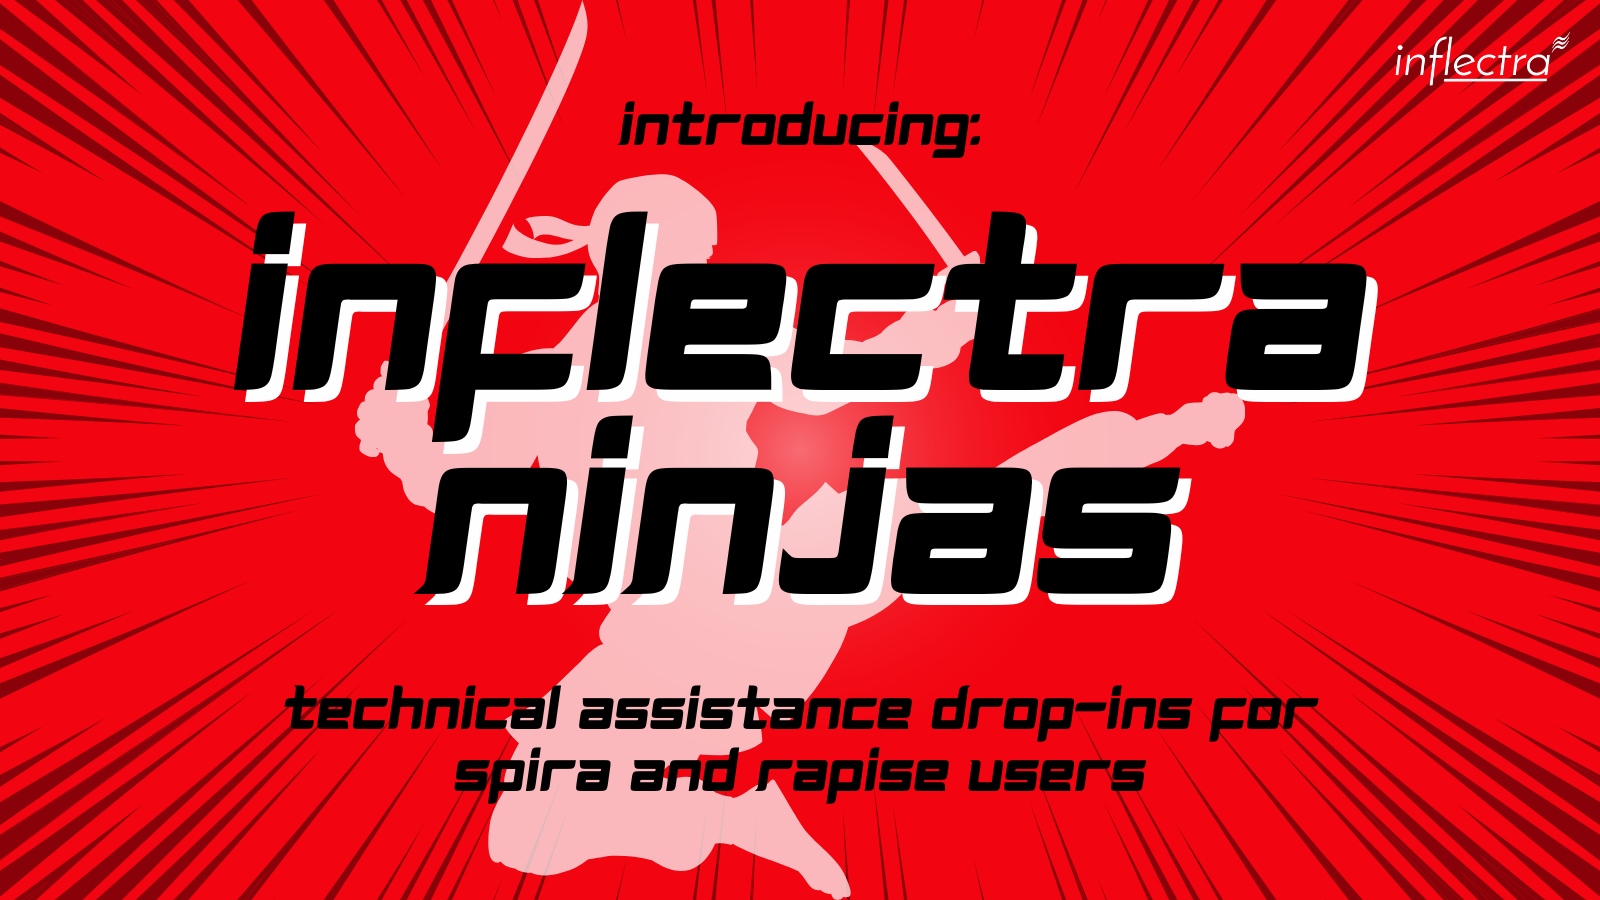 inflectra-ninja-spira-and-rapise-user-workshops-image